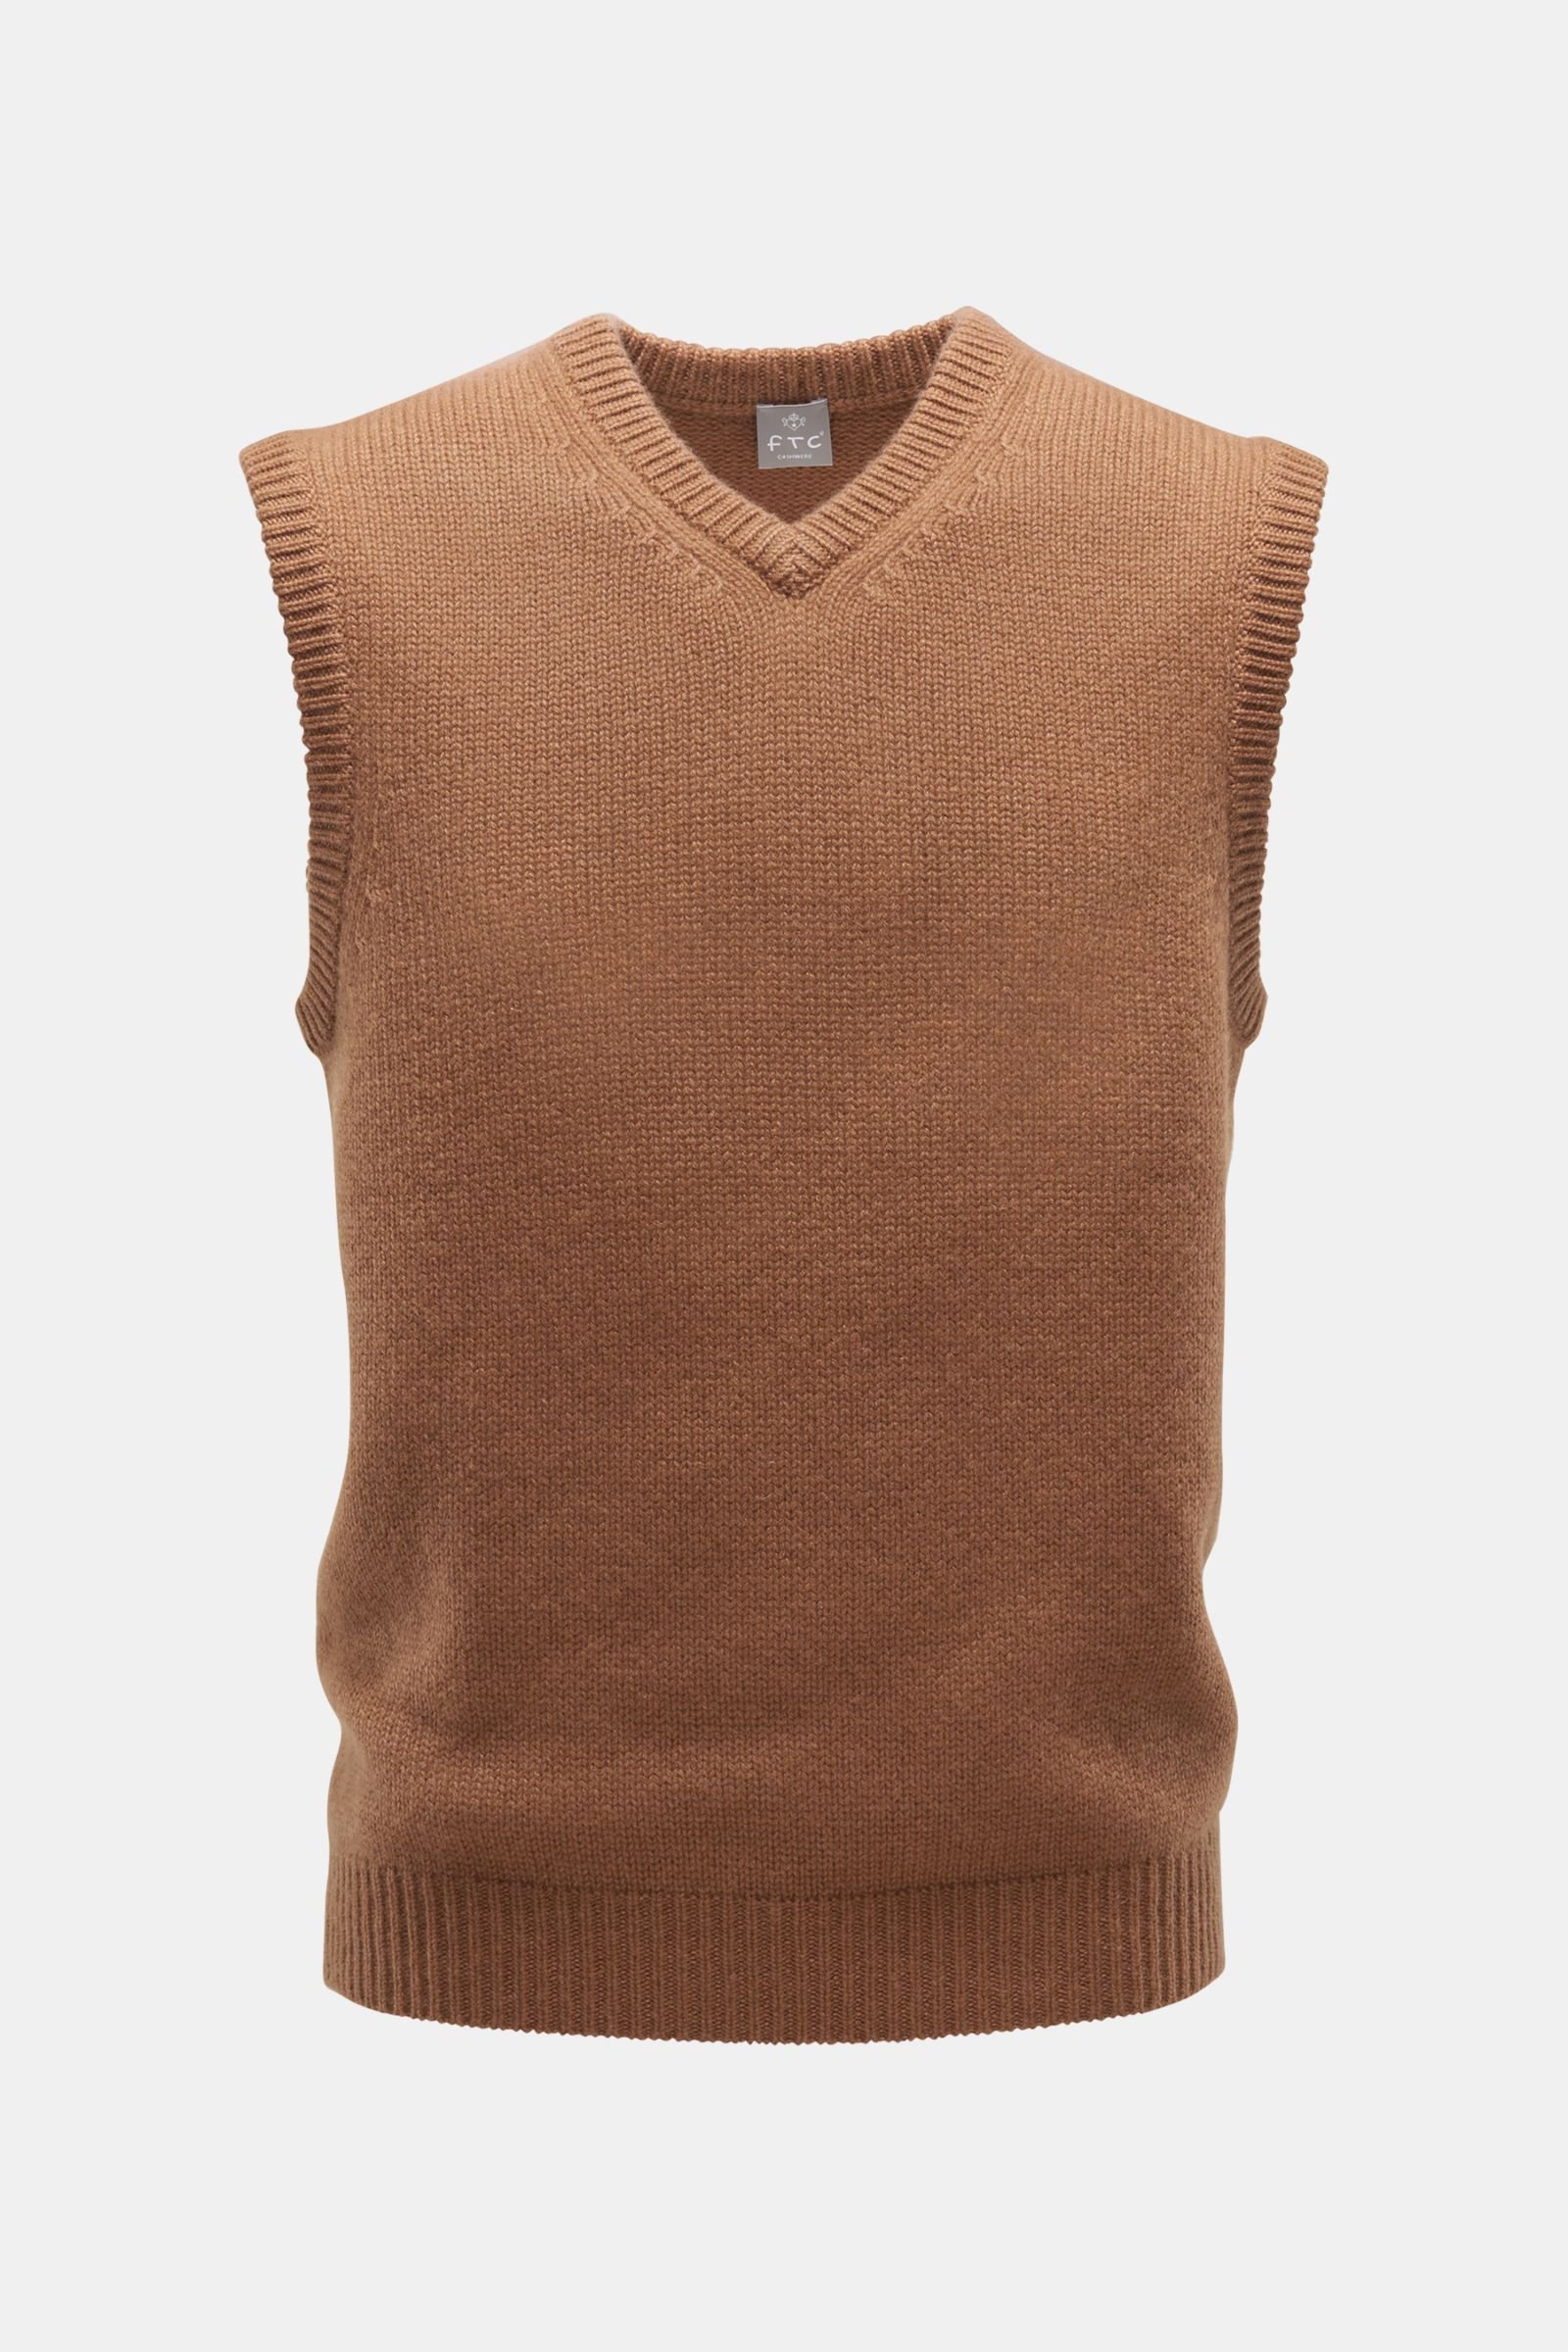 Cashmere v-neck sweater vest brown